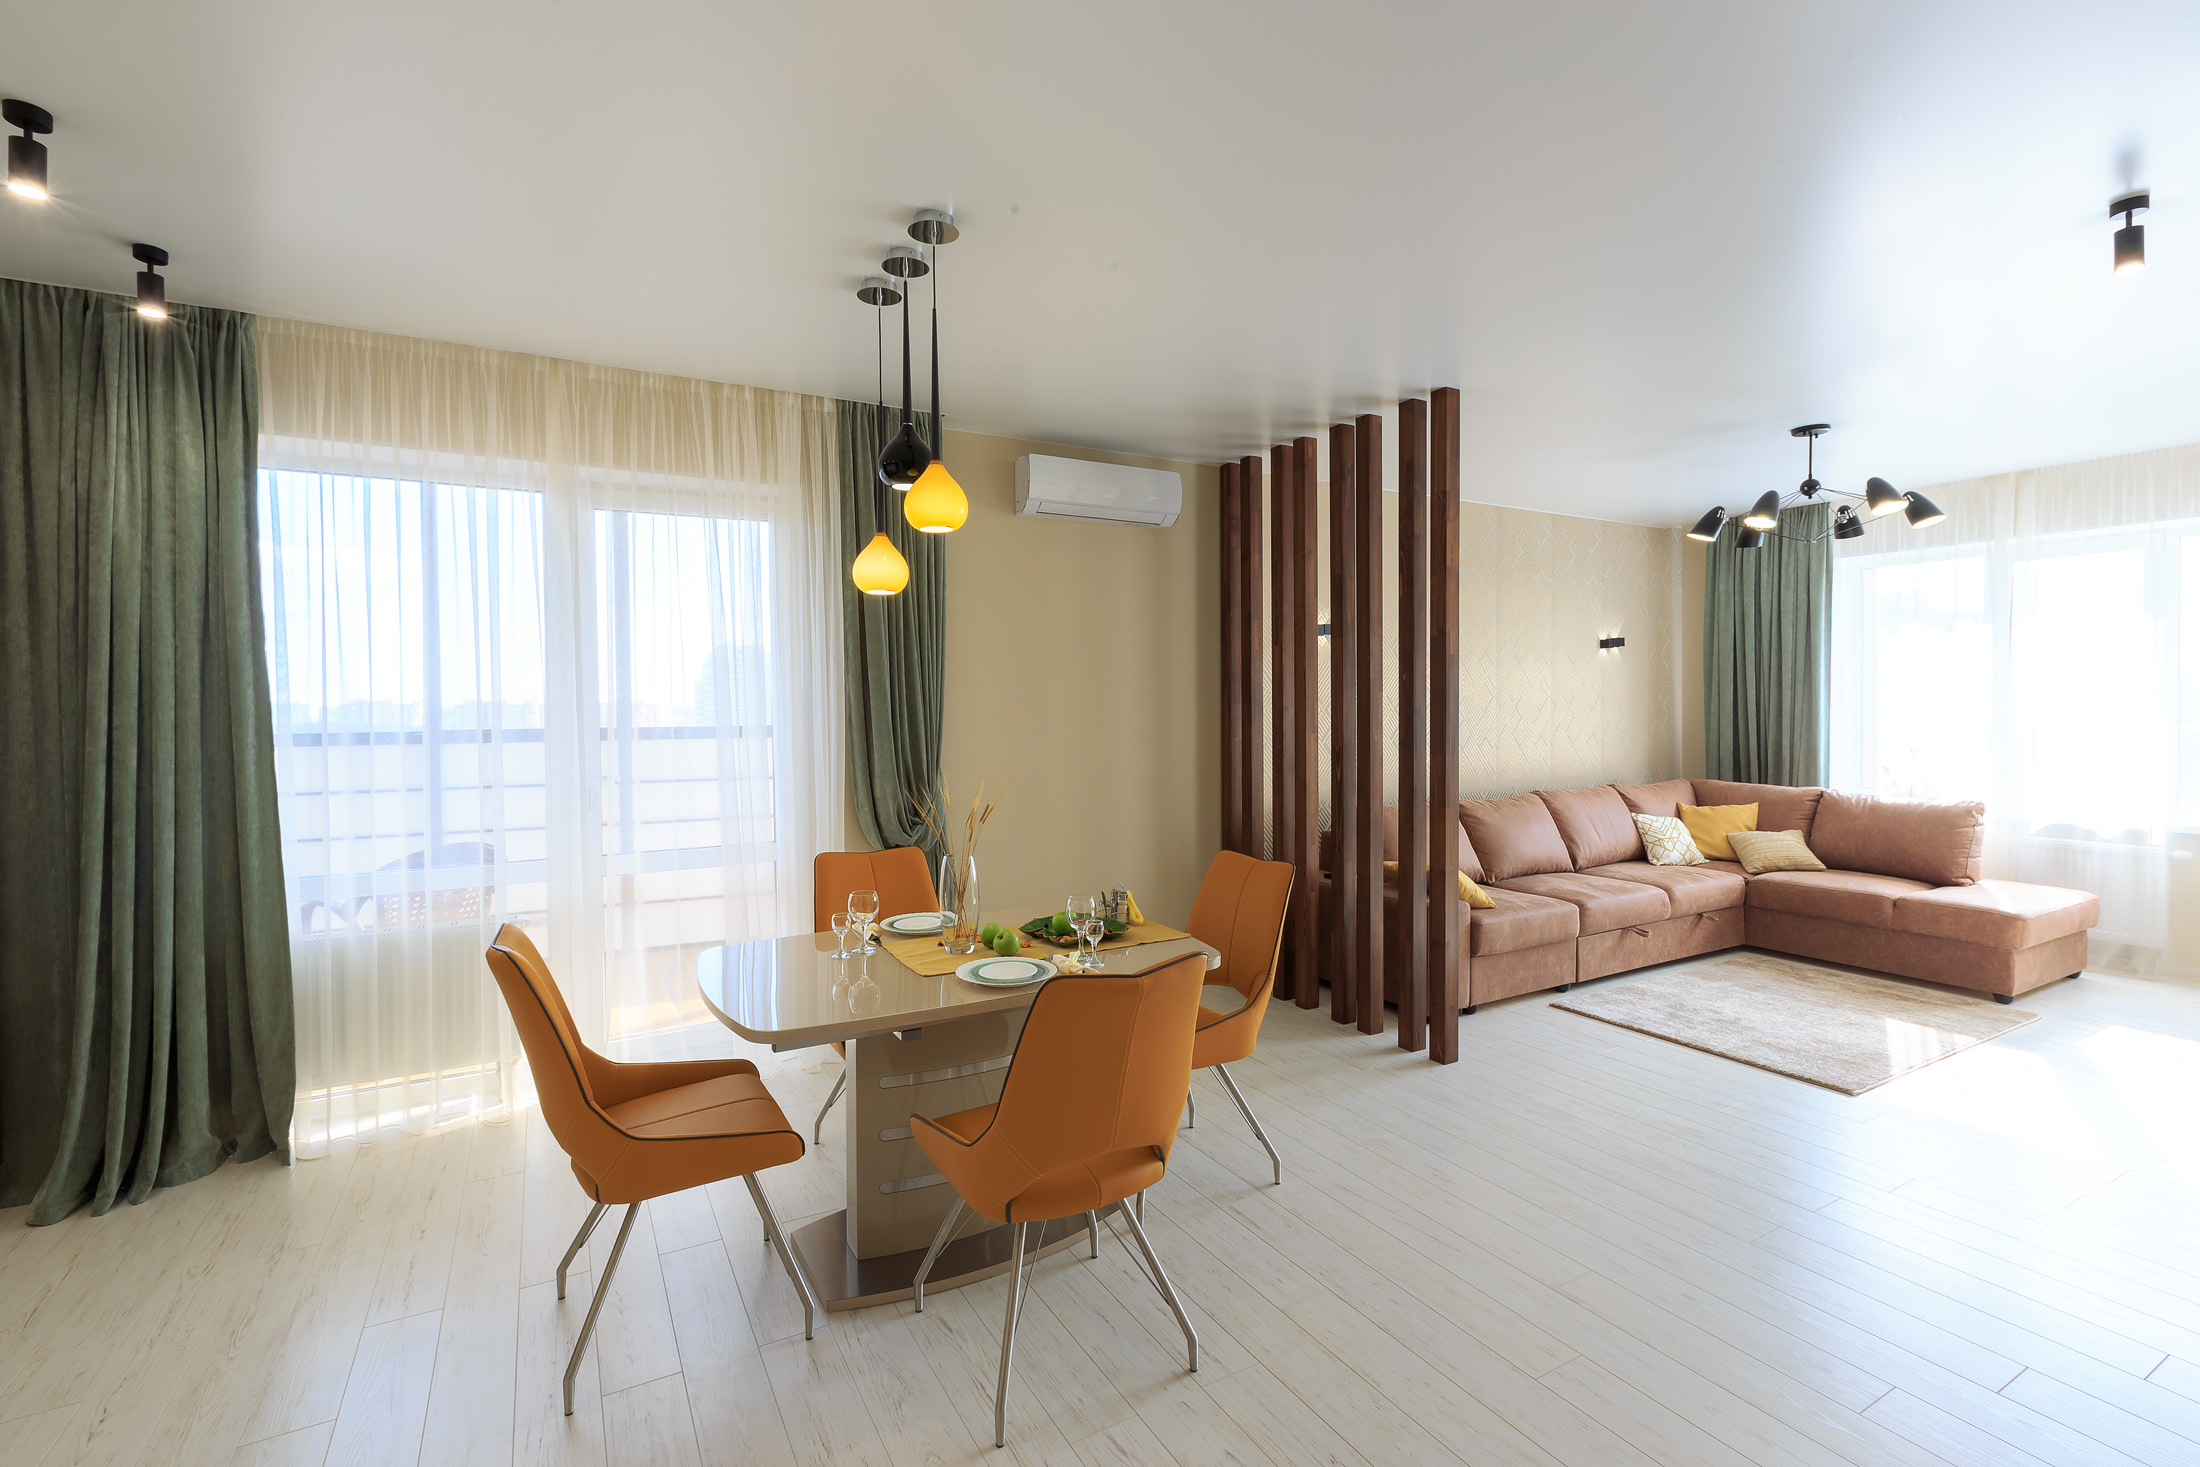 Двухкомнатная квартира на ул. Николая Островского 93б (67кв.м)до 4 гостей